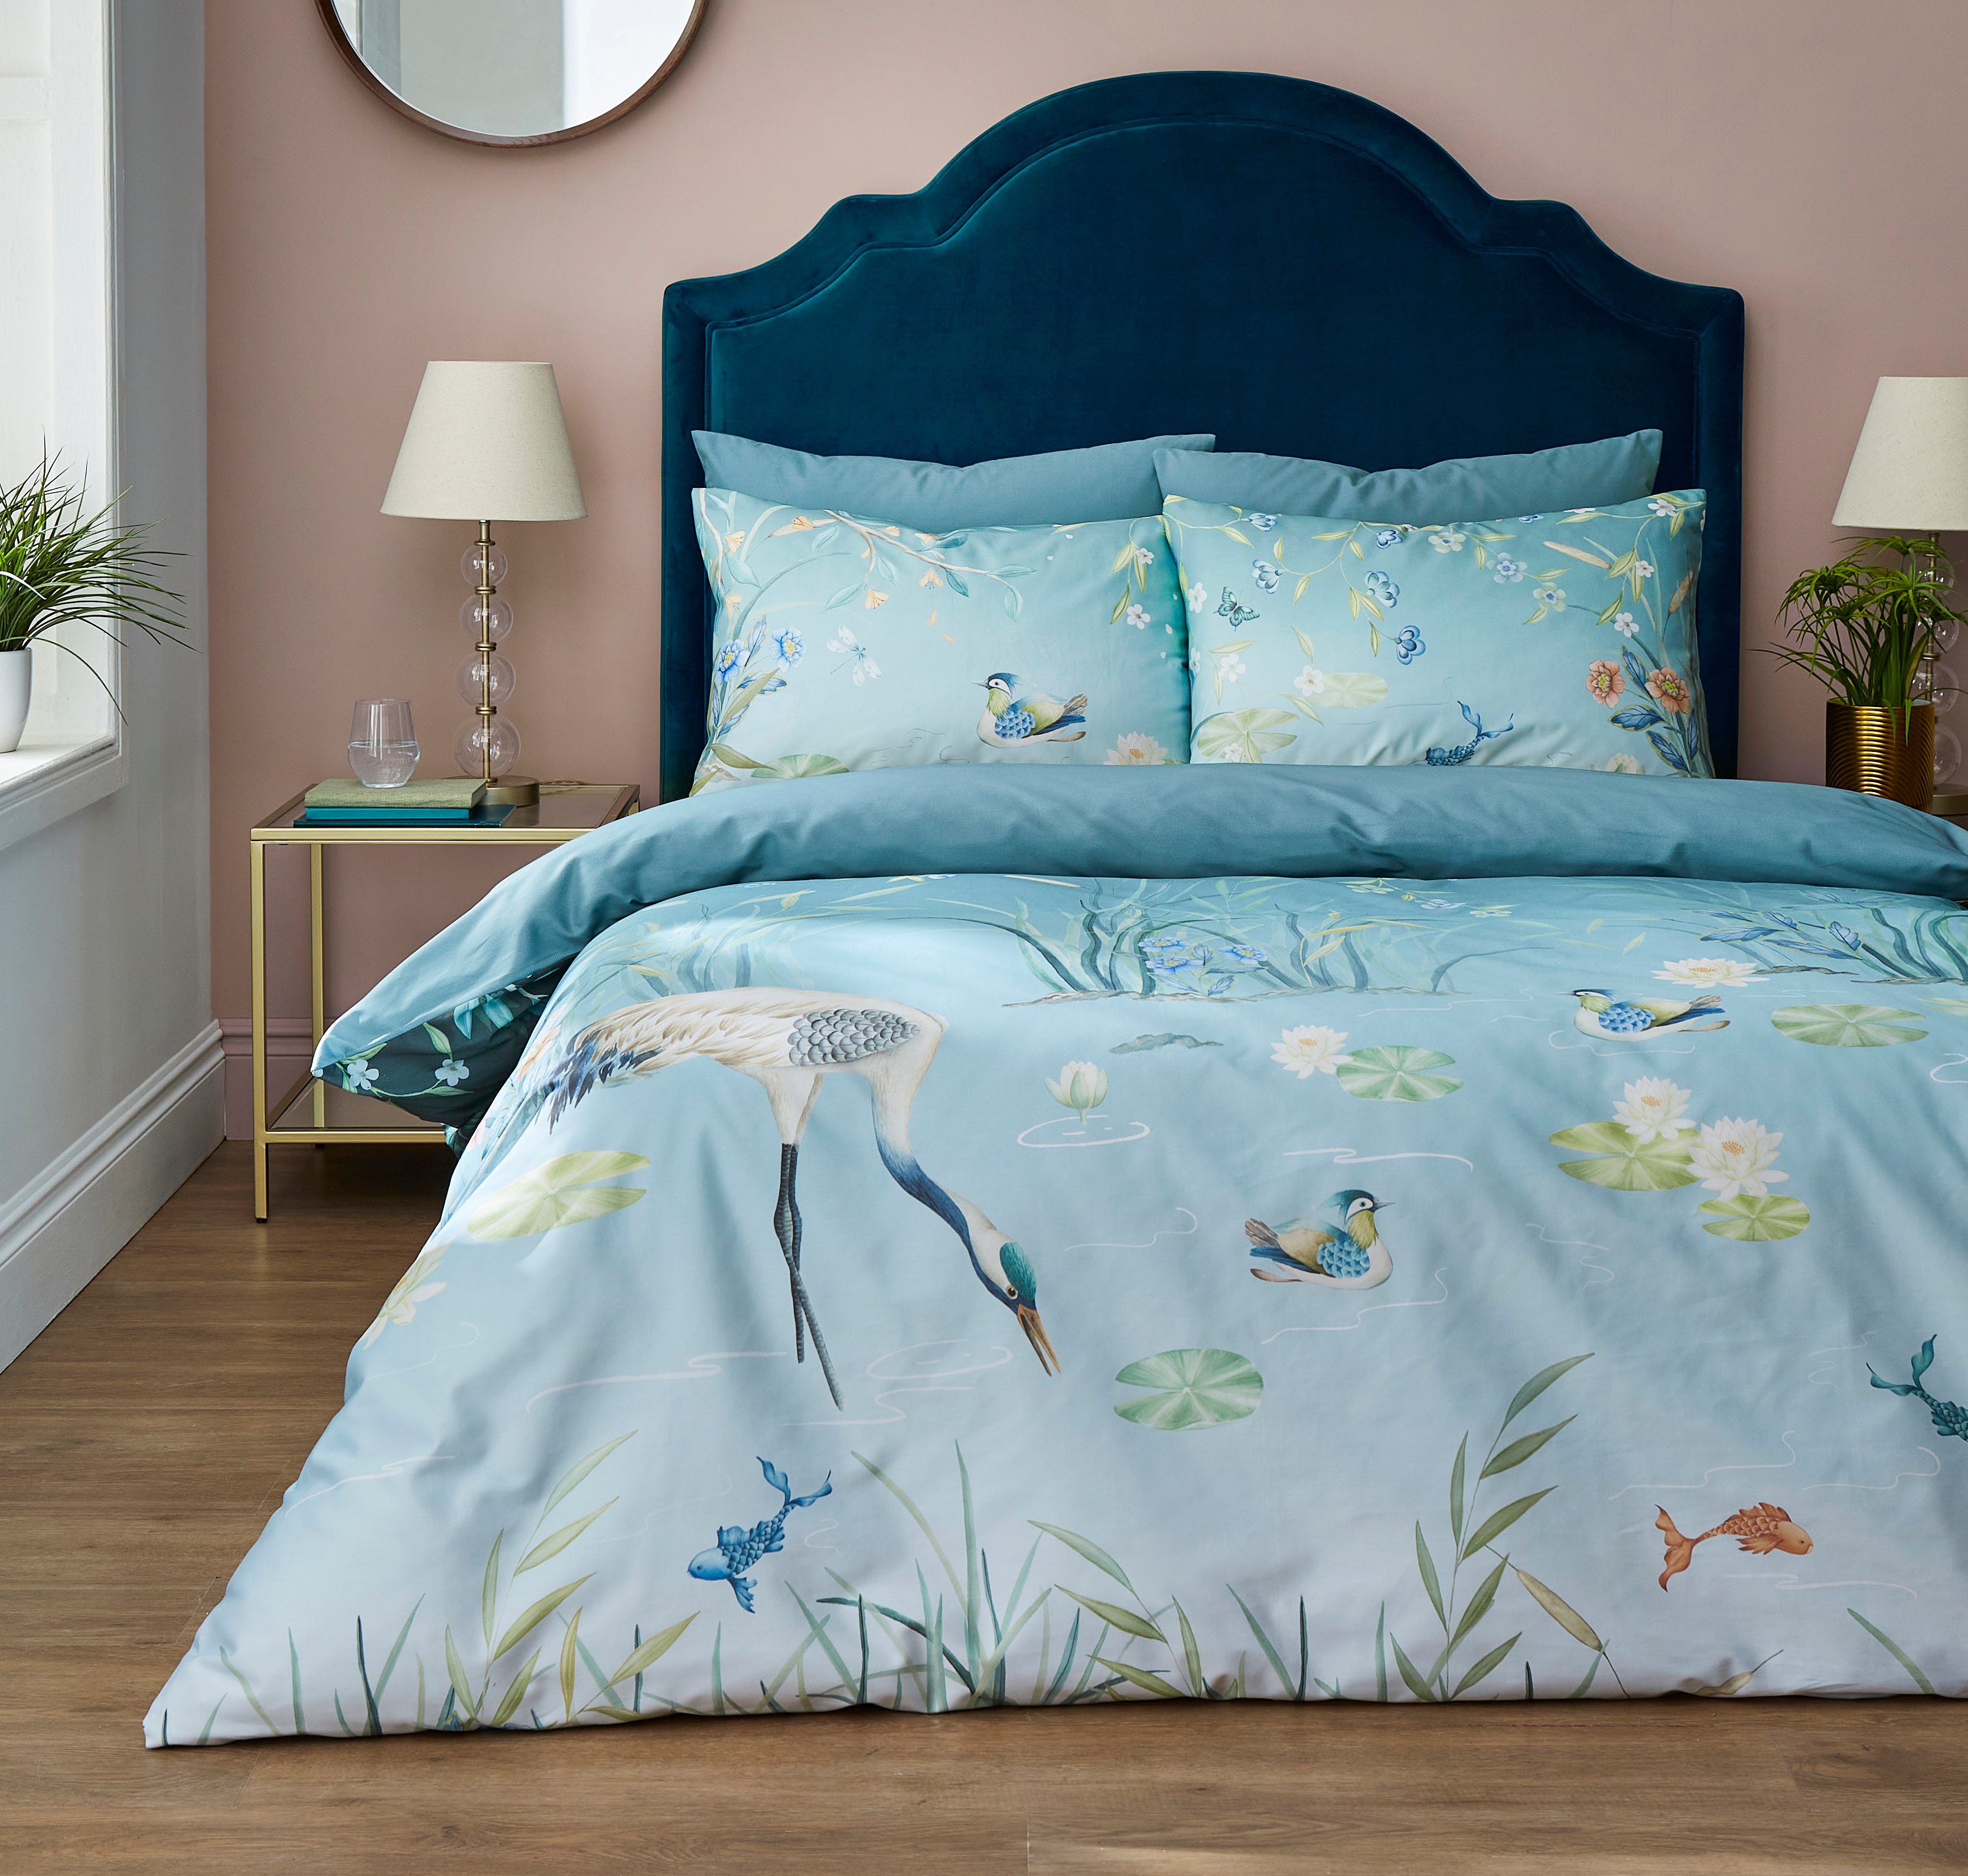 Garden Cranes Blue Duvet Cover and Pillowcase Set